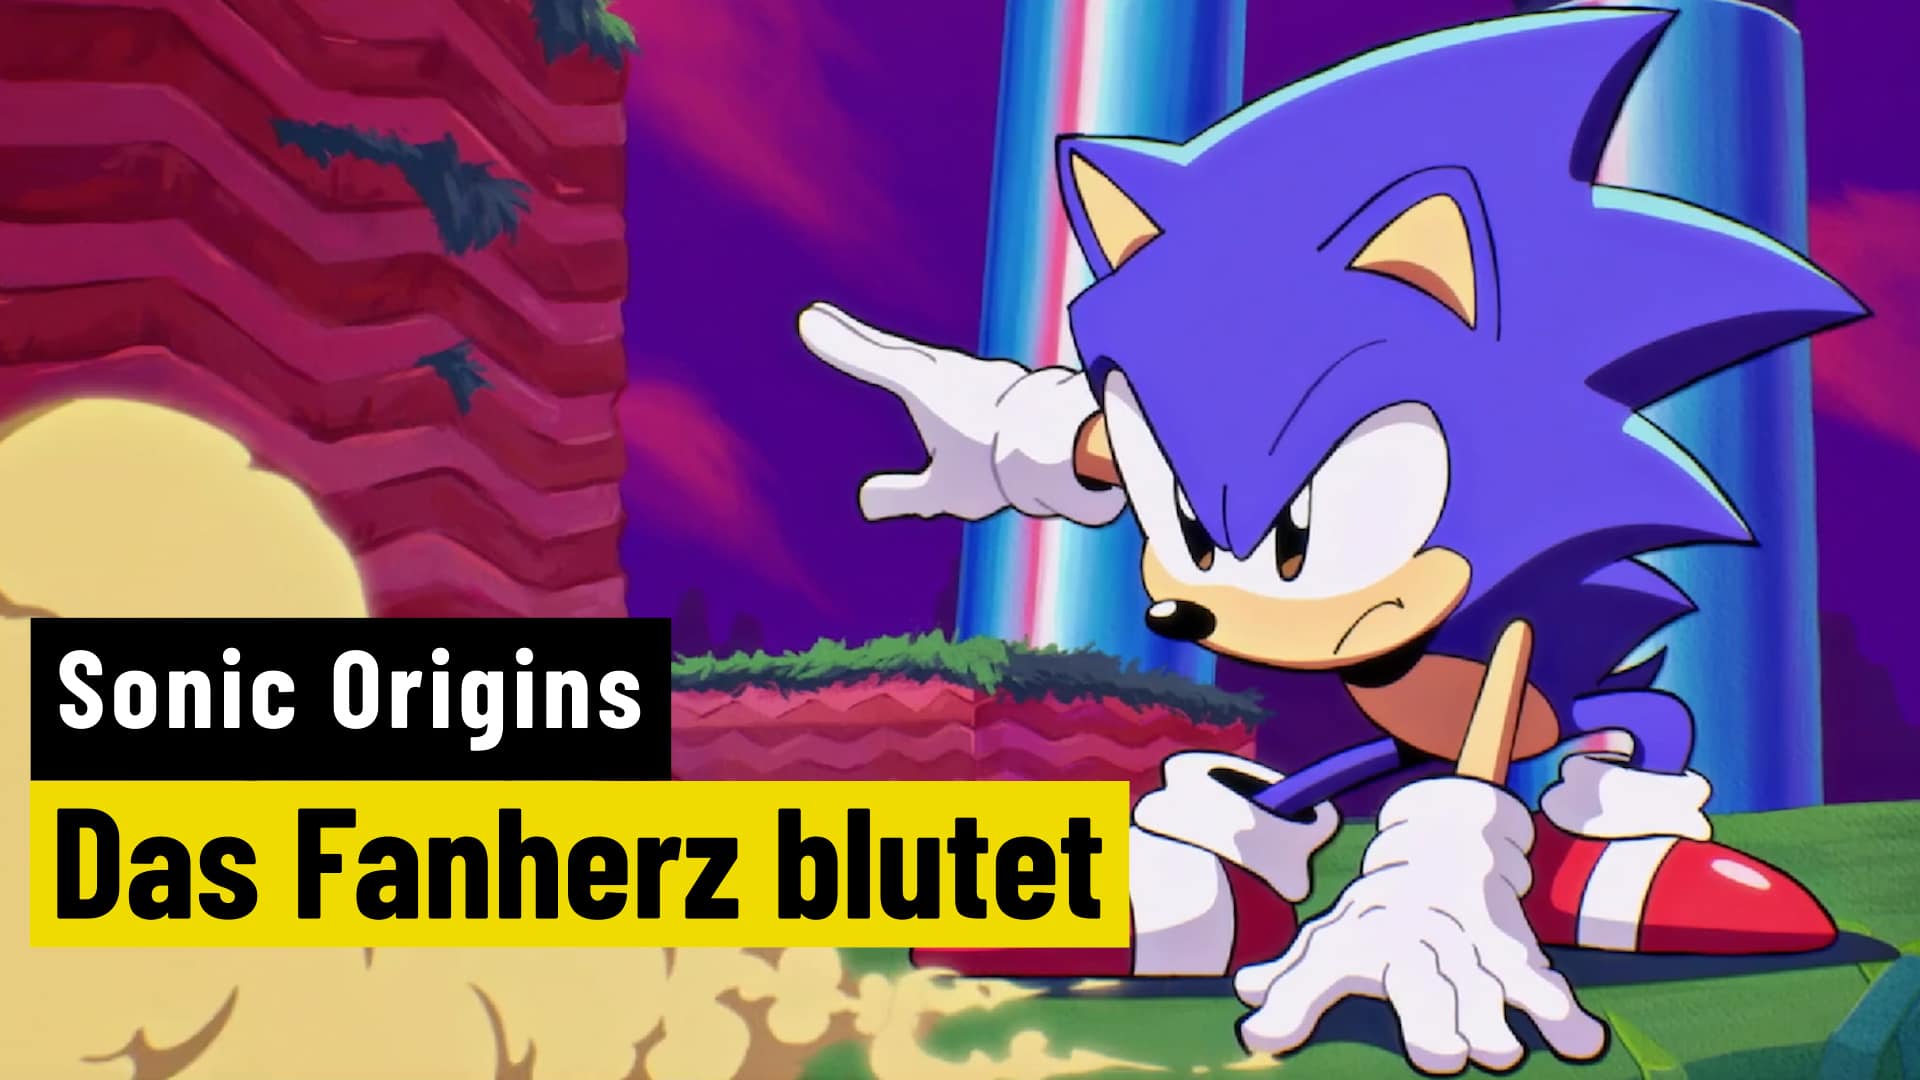 Sonic Origins: Since the fan heart bleeds